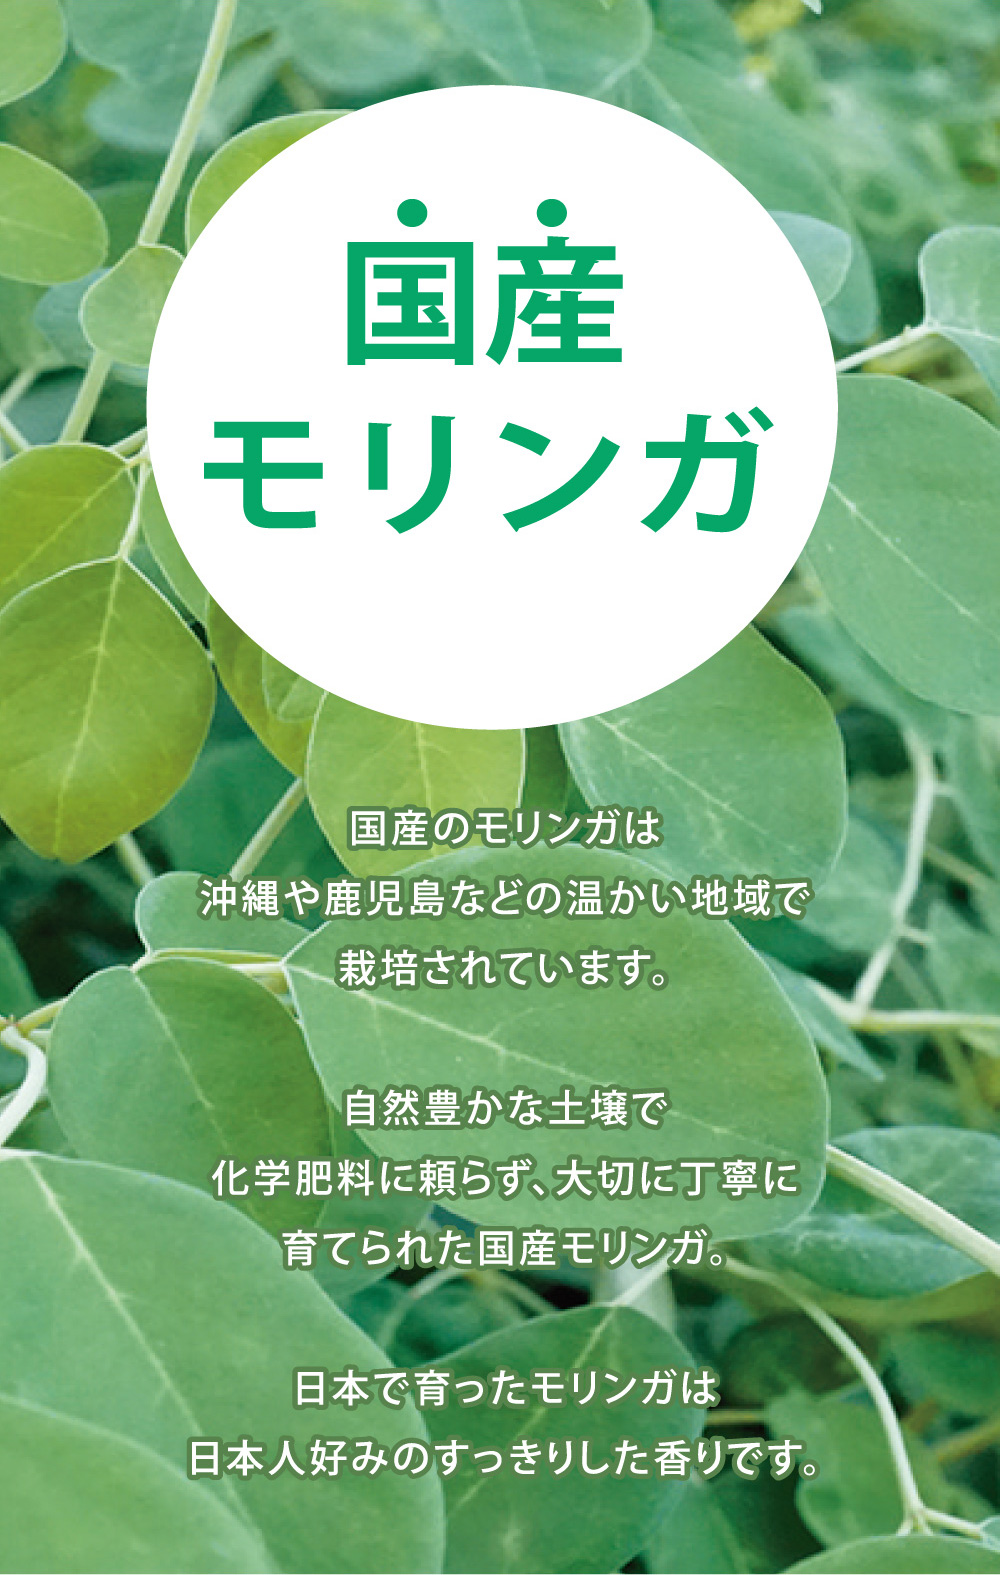 国産のモリンガは沖縄や鹿児島などの暖かい地域で栽培されています。 自然豊かな土壌で化学肥料に頼らず、大切に丁寧に育てられた国産モリンガ。 日本で育ったモリンガは日本人好みのすっきりした香りです。